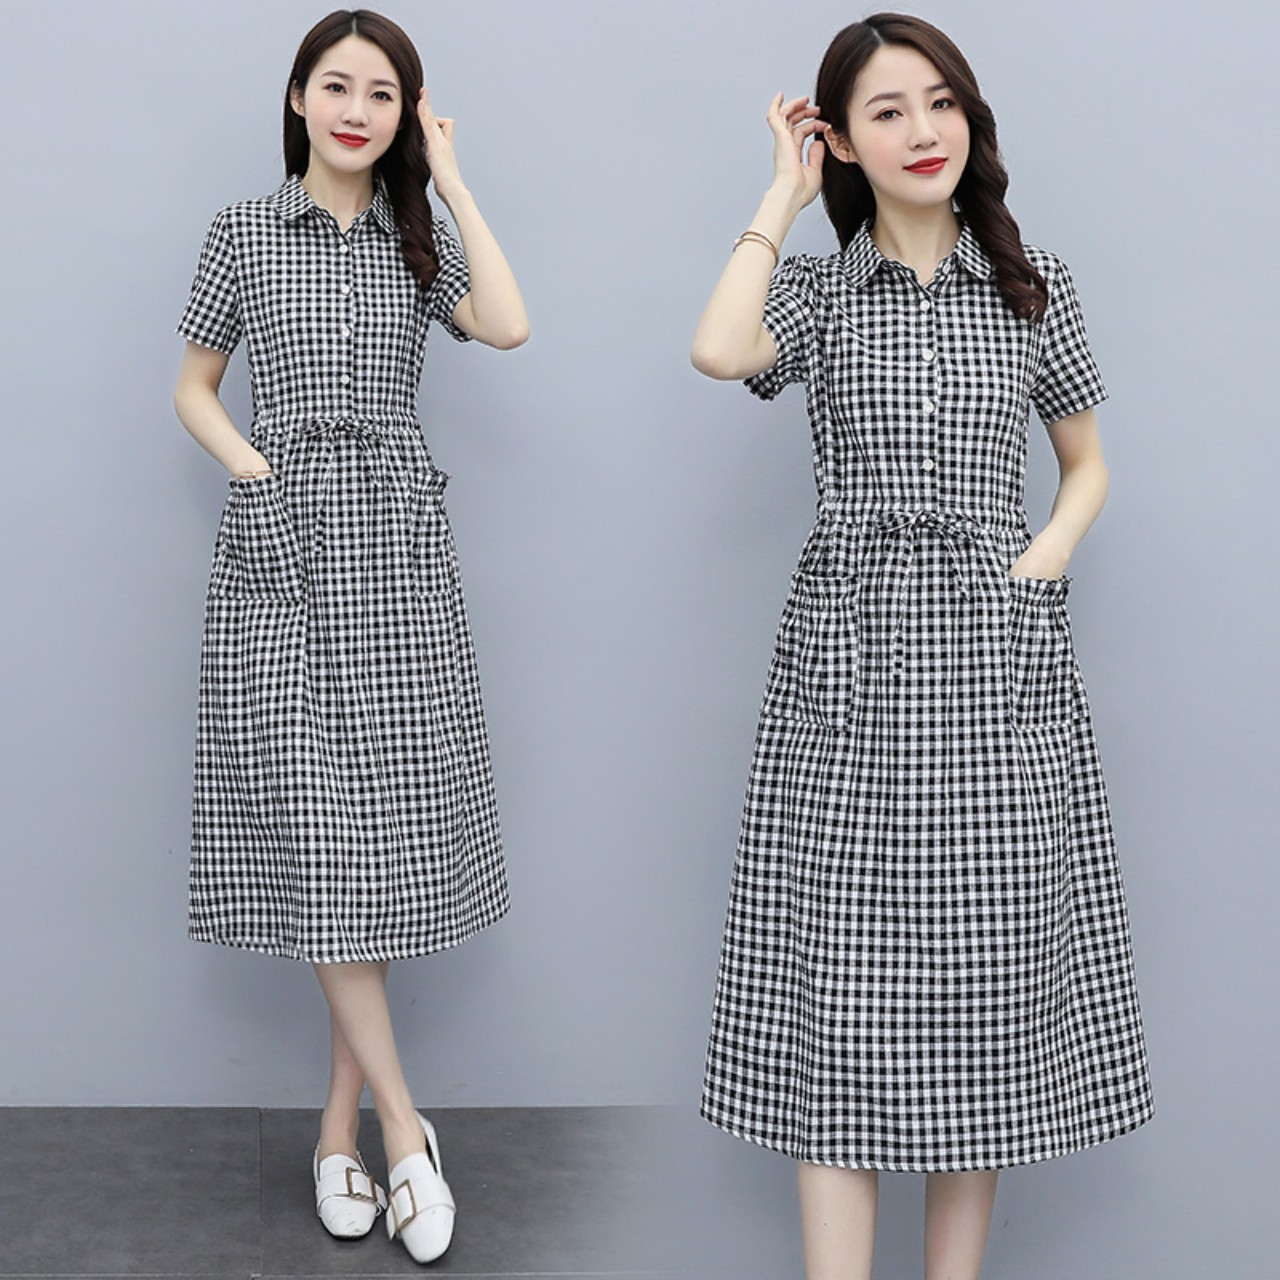 30 Mẫu Váy Đầm Xòe Cổ Sơ Mi Đẹp 2022 Kiểu Hàn Quốc